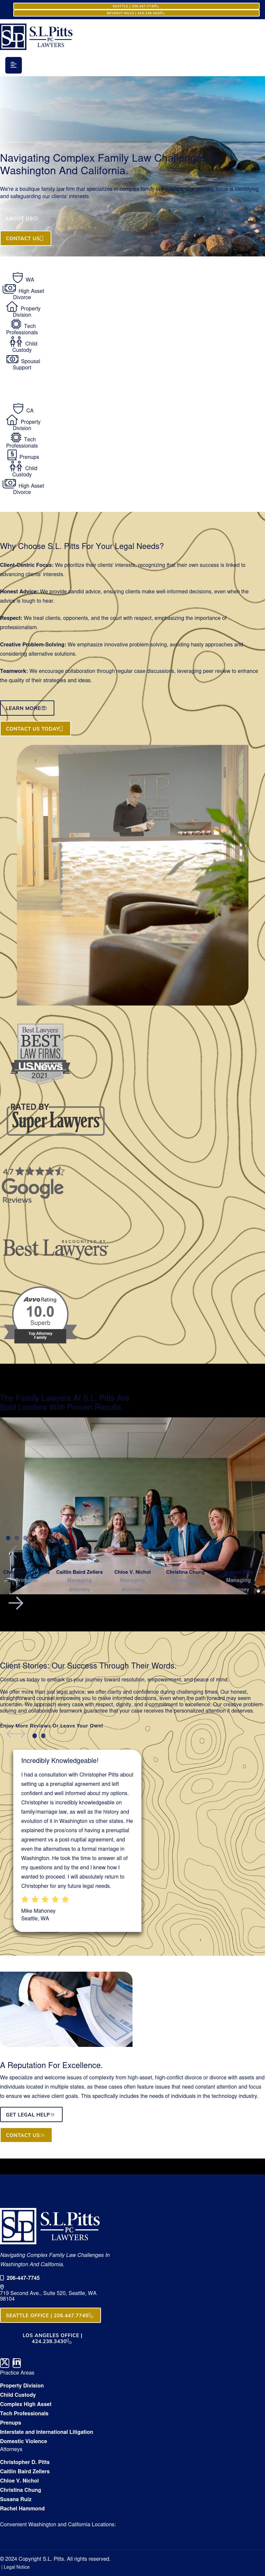 S.L. Pitts & Associates PLLC - Bainbridge Island WA Lawyers